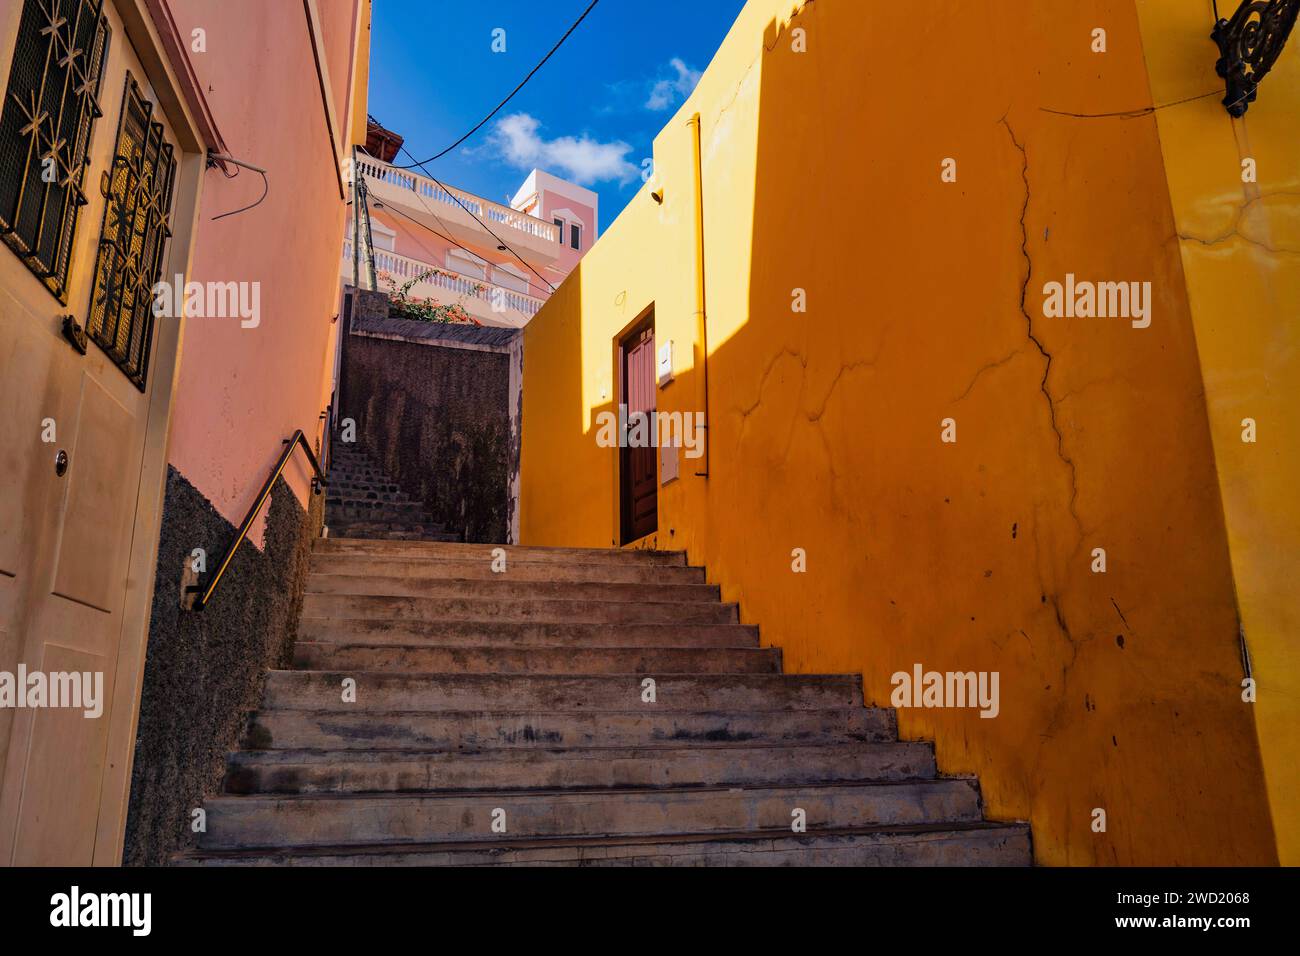 Eine lebhafte Treppenaufgangsszene mit warmen gelben Wänden, die den Aufstieg umrahmen und den charmanten Charakter der Straßenarchitektur von Ribeira Grande unter ihnen einfangen Stockfoto